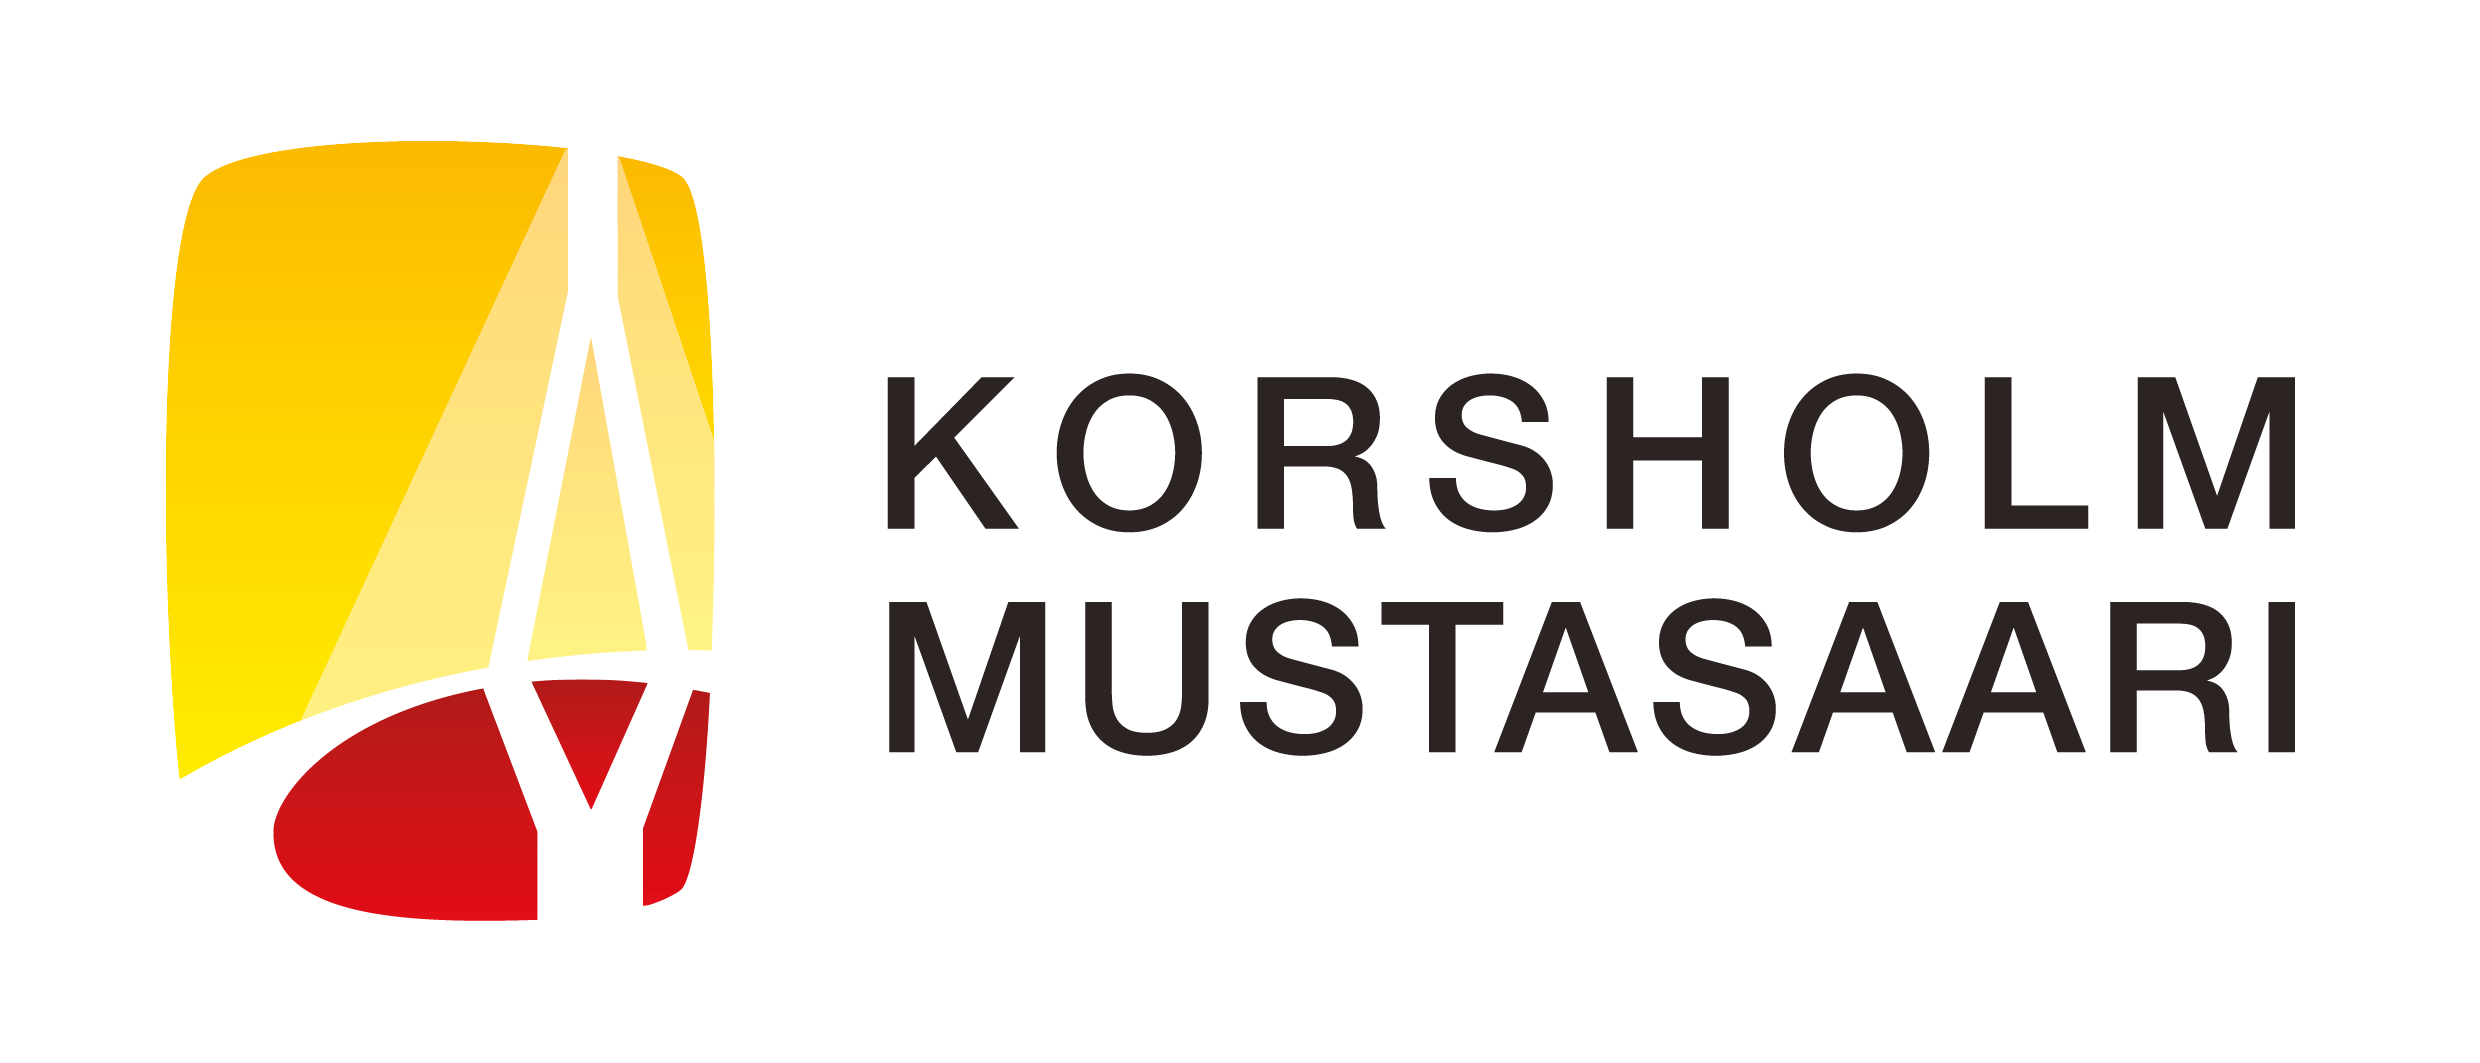 Korsholms logo